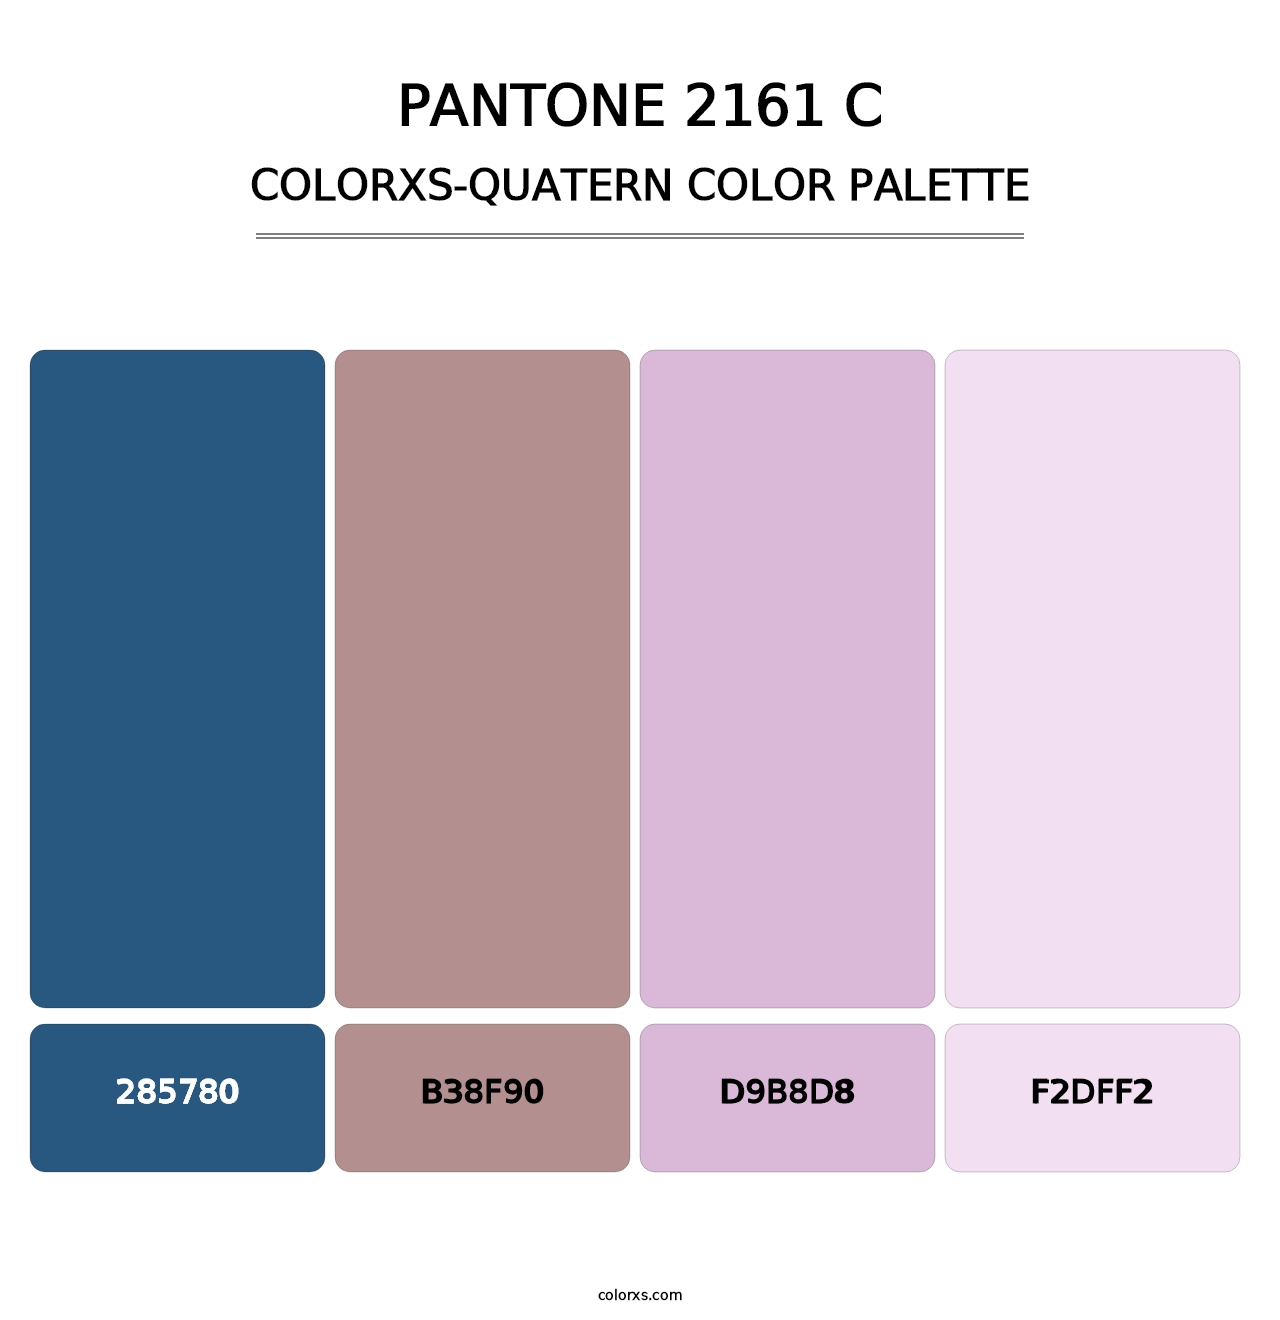 PANTONE 2161 C - Colorxs Quatern Palette